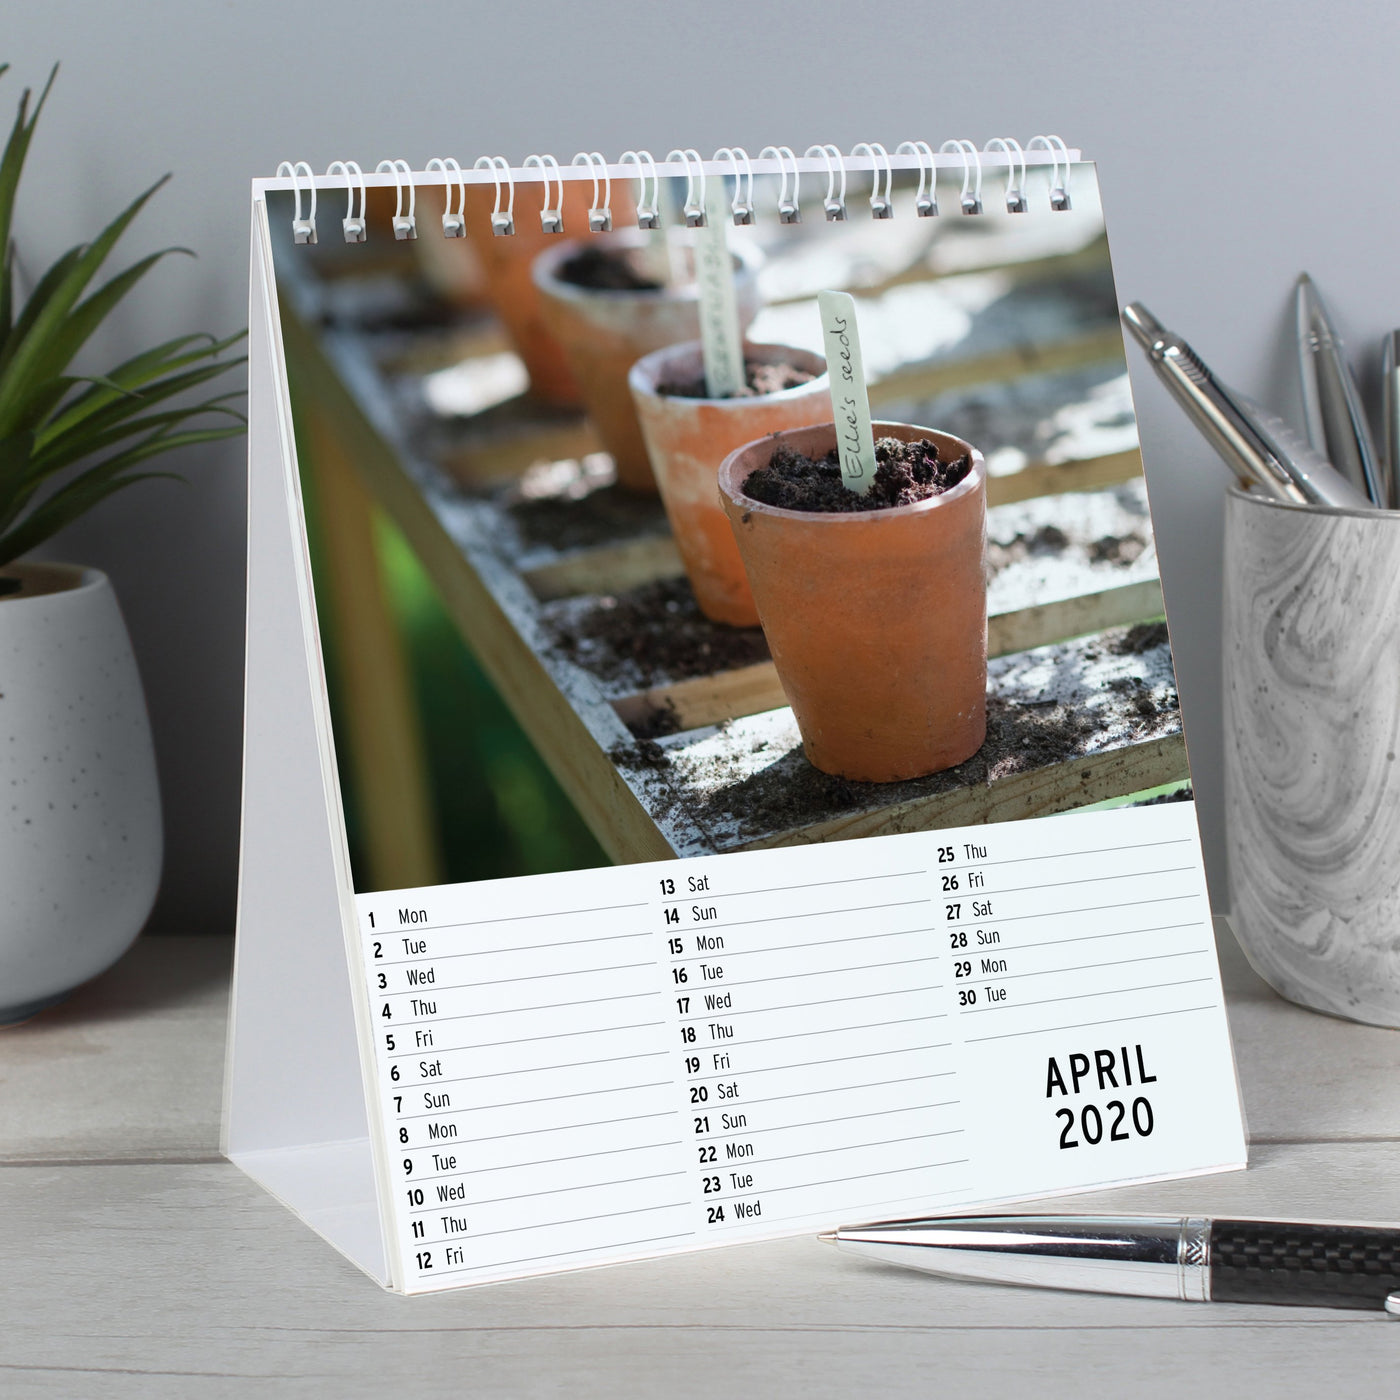 Personalised Gardening Desk Calendar - Shop Personalised Gifts